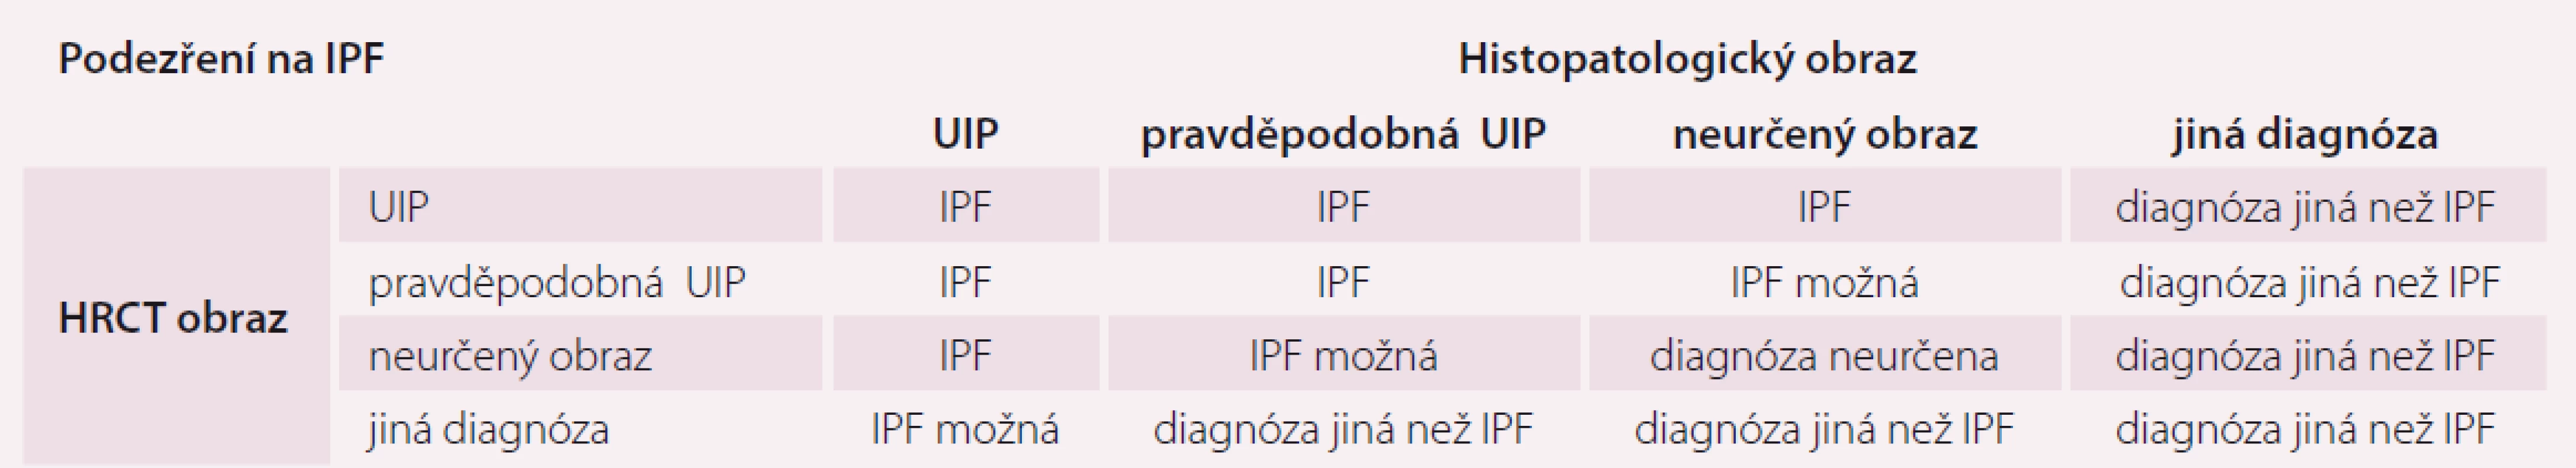 Kombinace radiologického a histopatologického obrazu v diagnostice IPF.